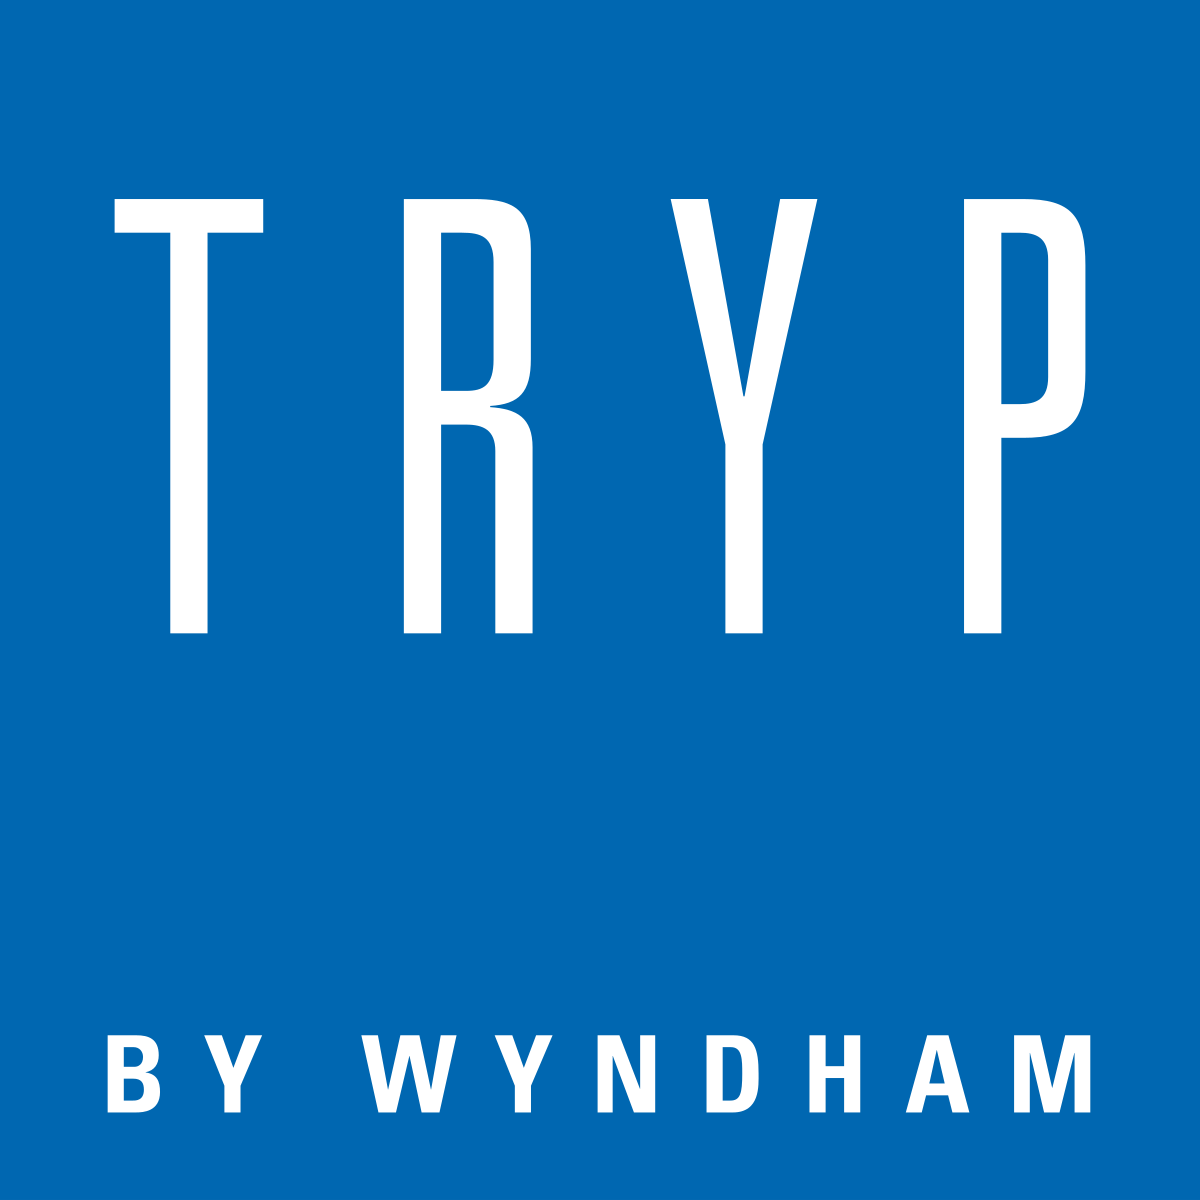 TRYP by Wyndham - Wikipedia